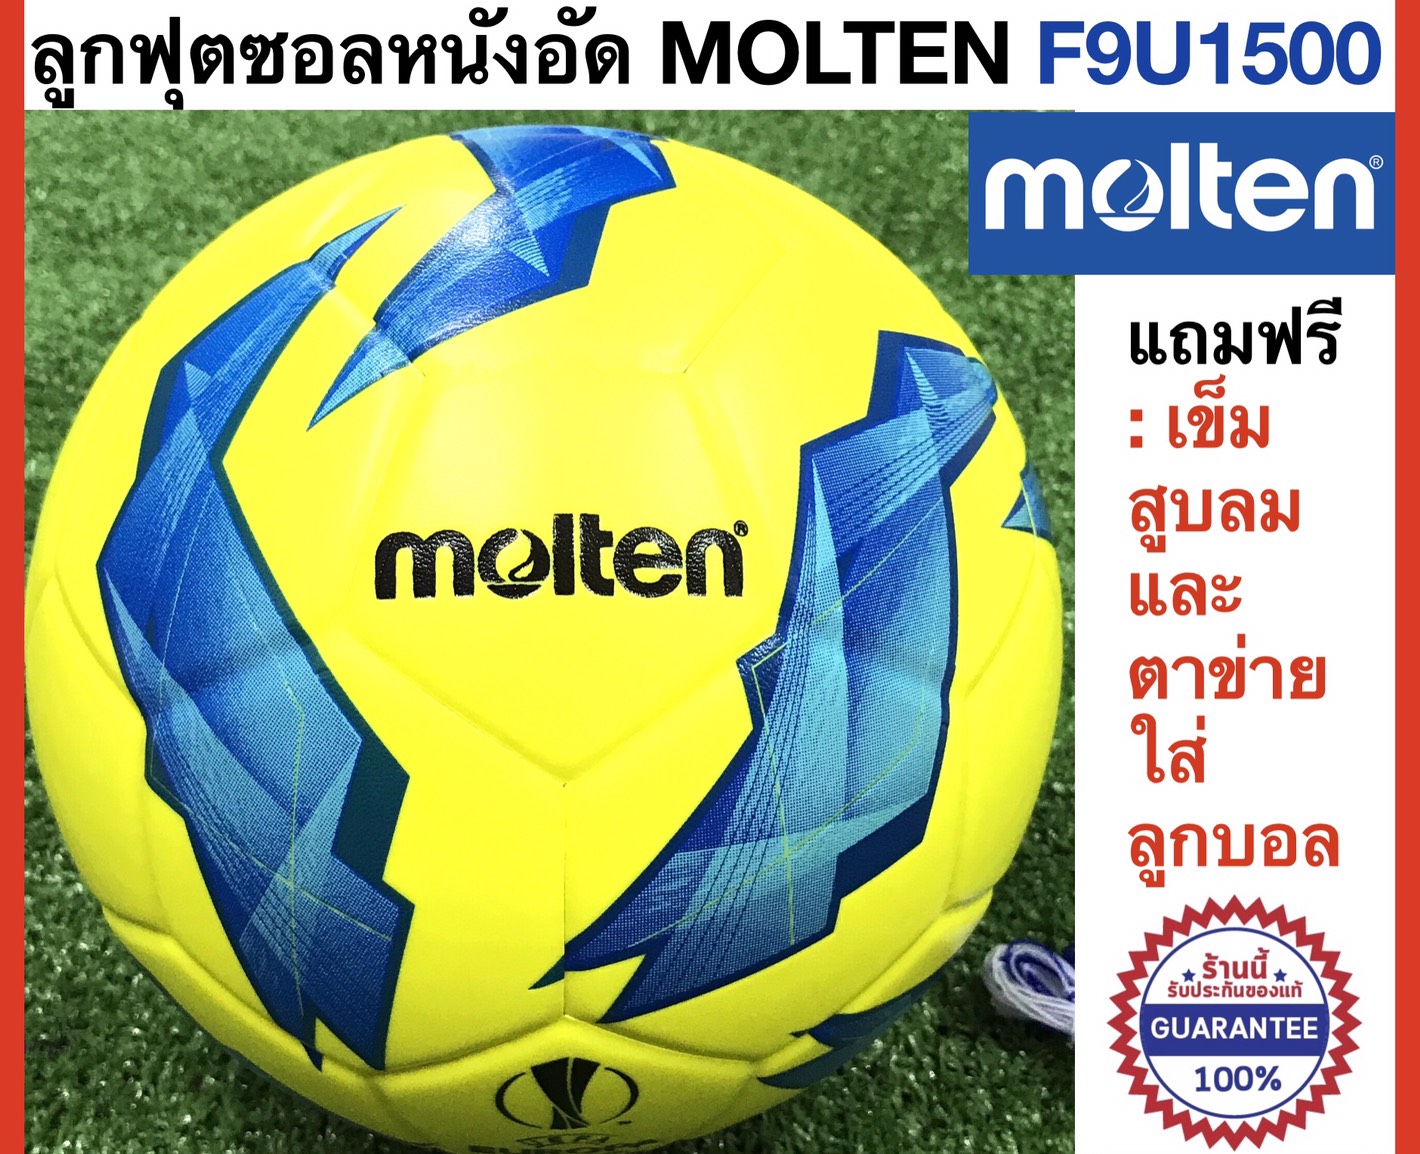 Molten ลูกฟุตซอลมอลเท่น หนังอัด รุ่น F9U1500 ของแท้ แถมฟรี : เข็มสูบและตาข่ายใส่บอล